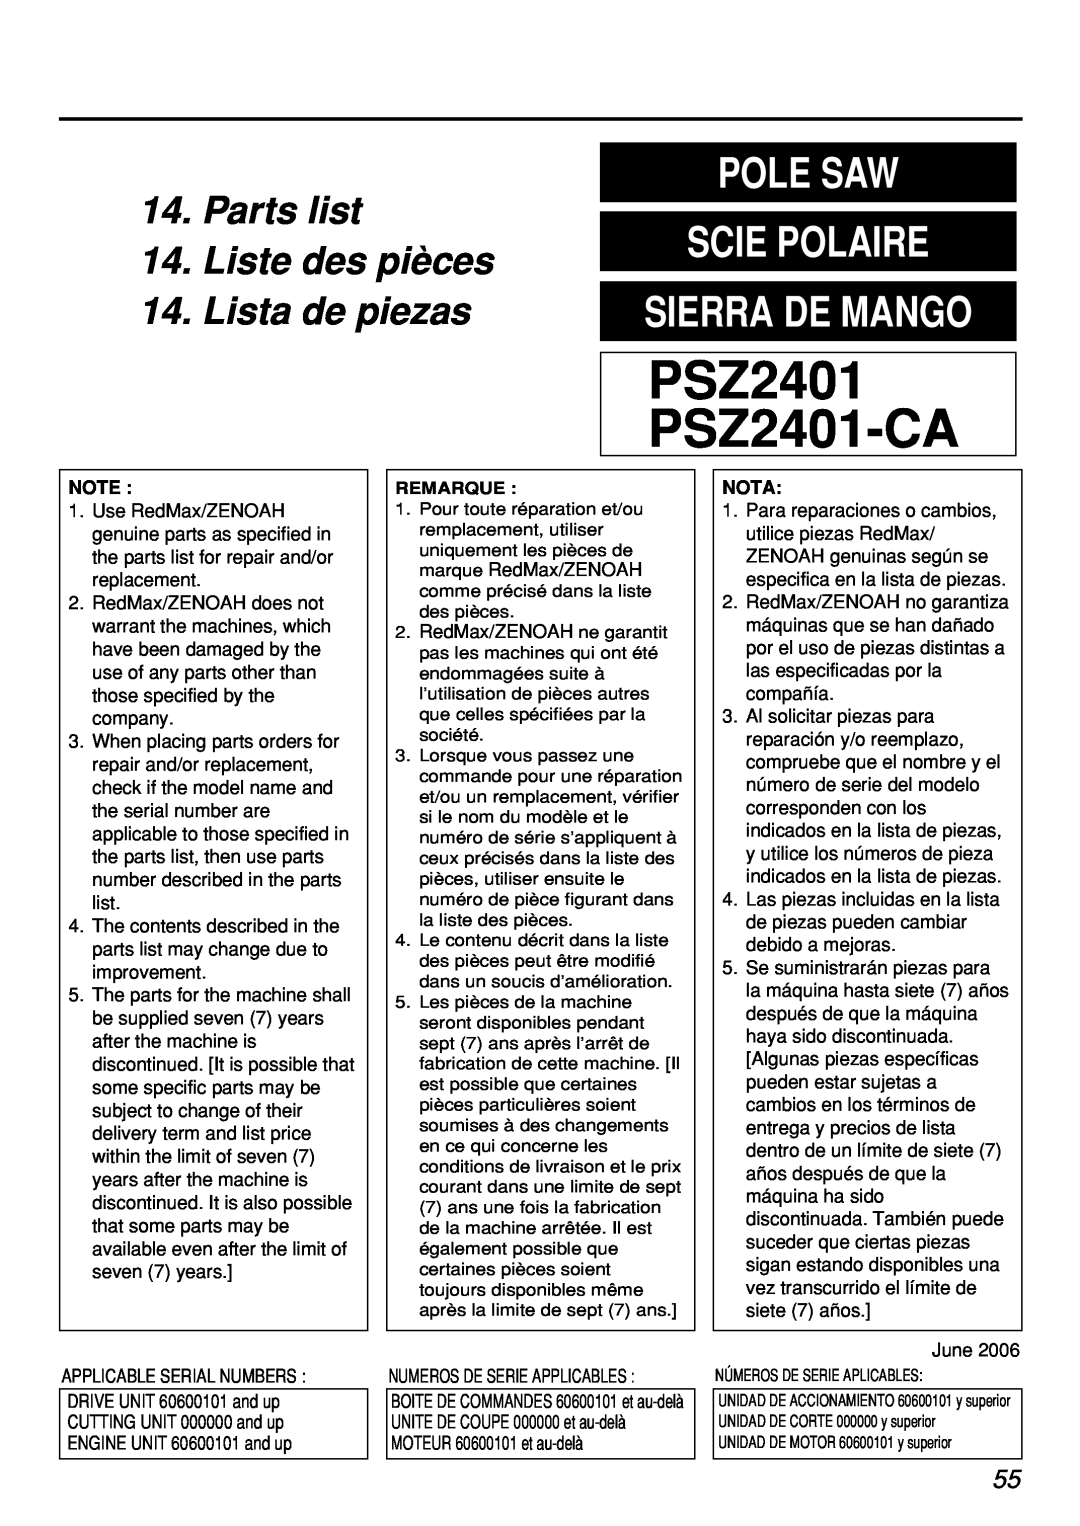 Zenoah PSZ2401, PSZ2401-CA, PSZ2401-CA, PSZ2401 manual Parts list 14.Liste des pièces, Lista de piezas, PSZ2401 PSZ2401-CA 